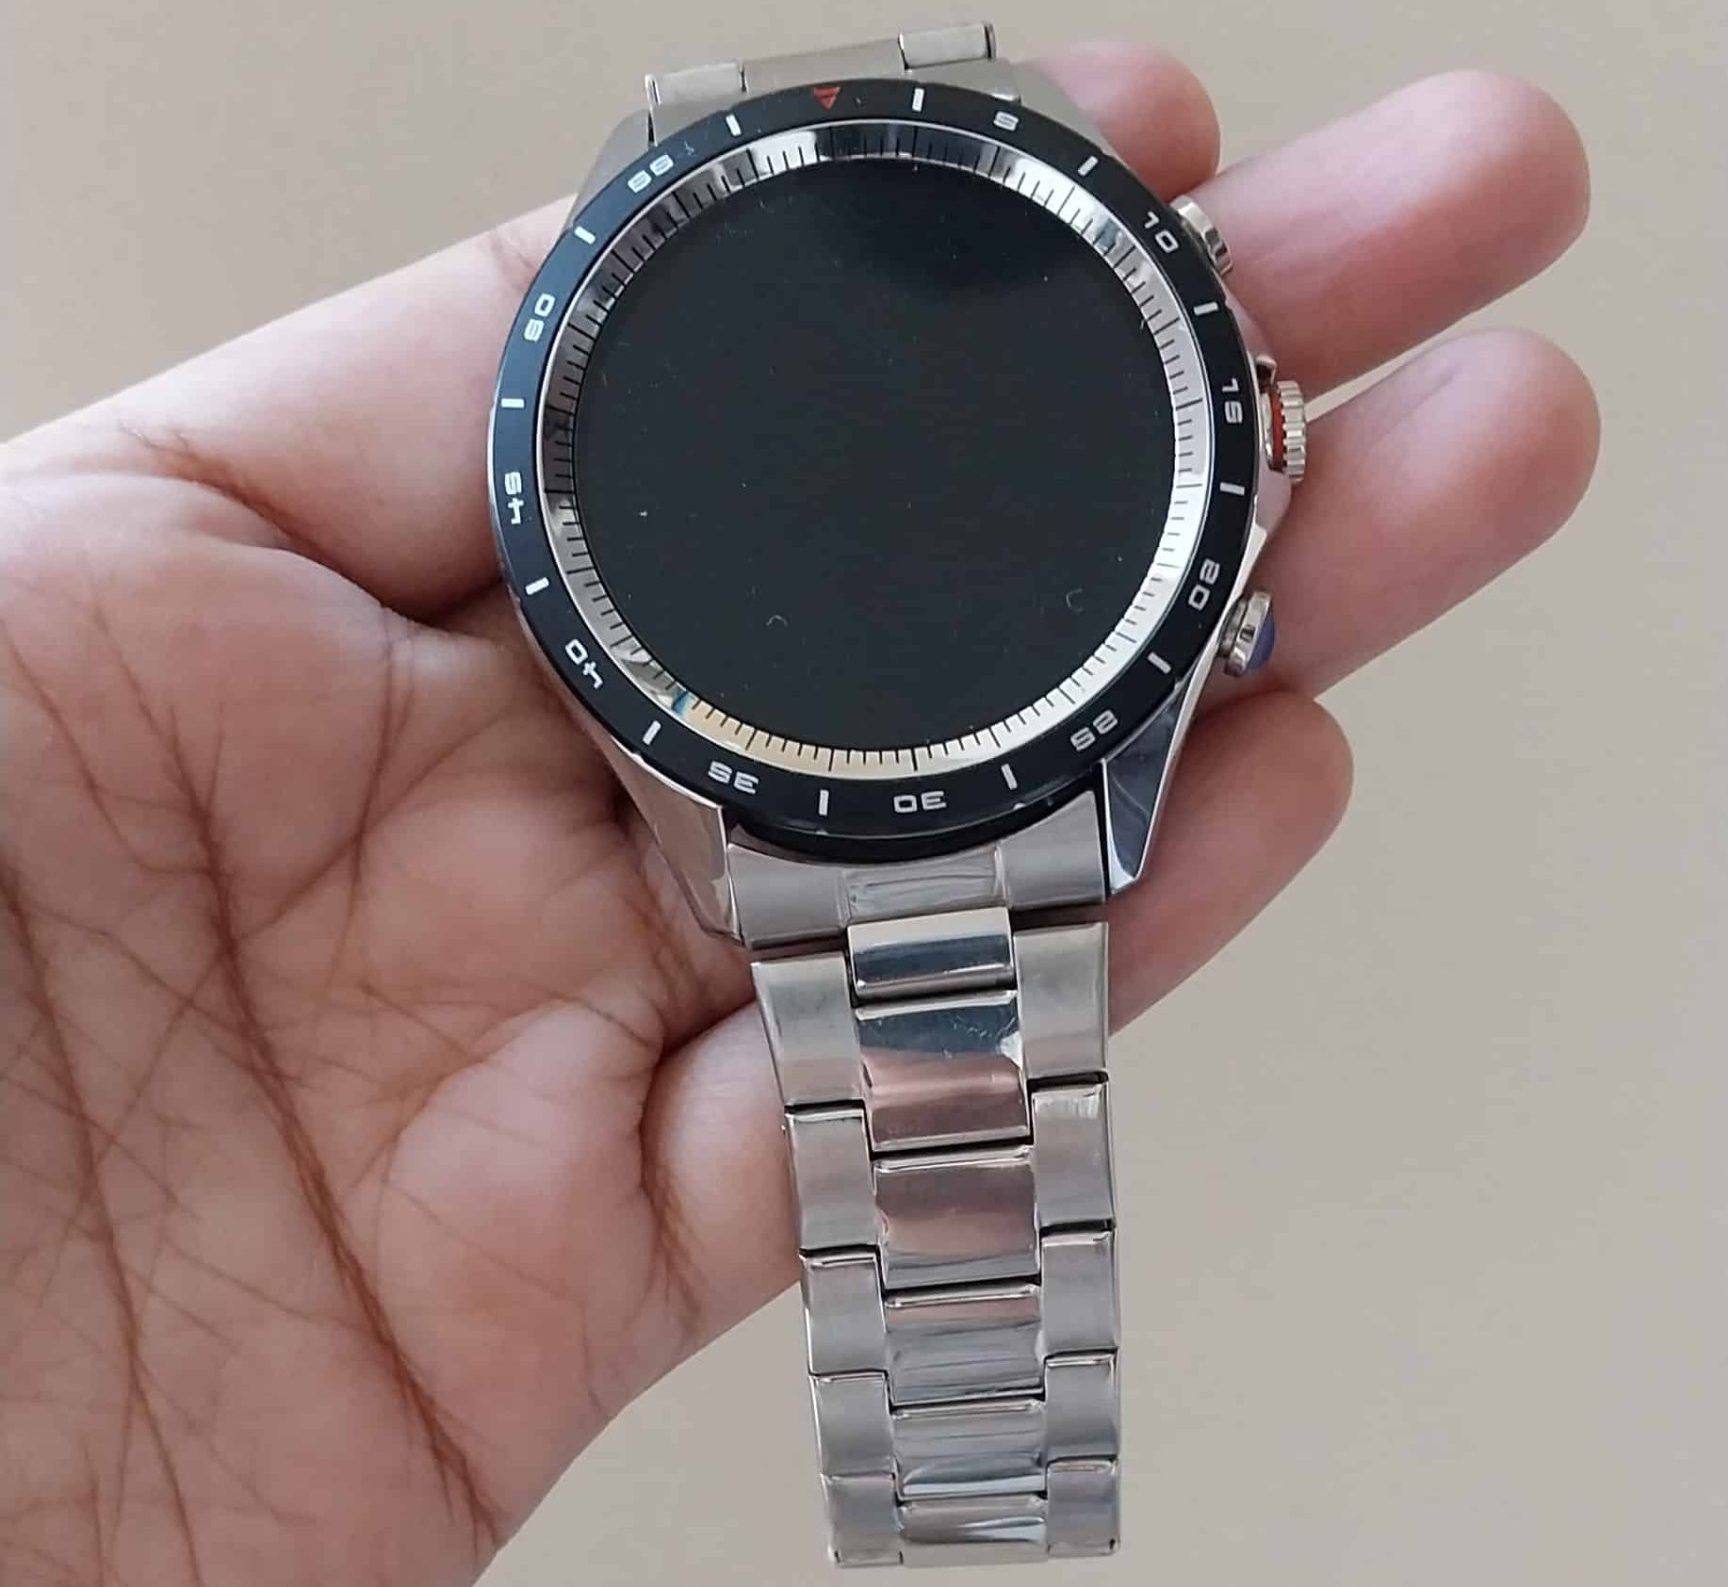 Fire-Boltt Solace Luxe Smartwatch- Design